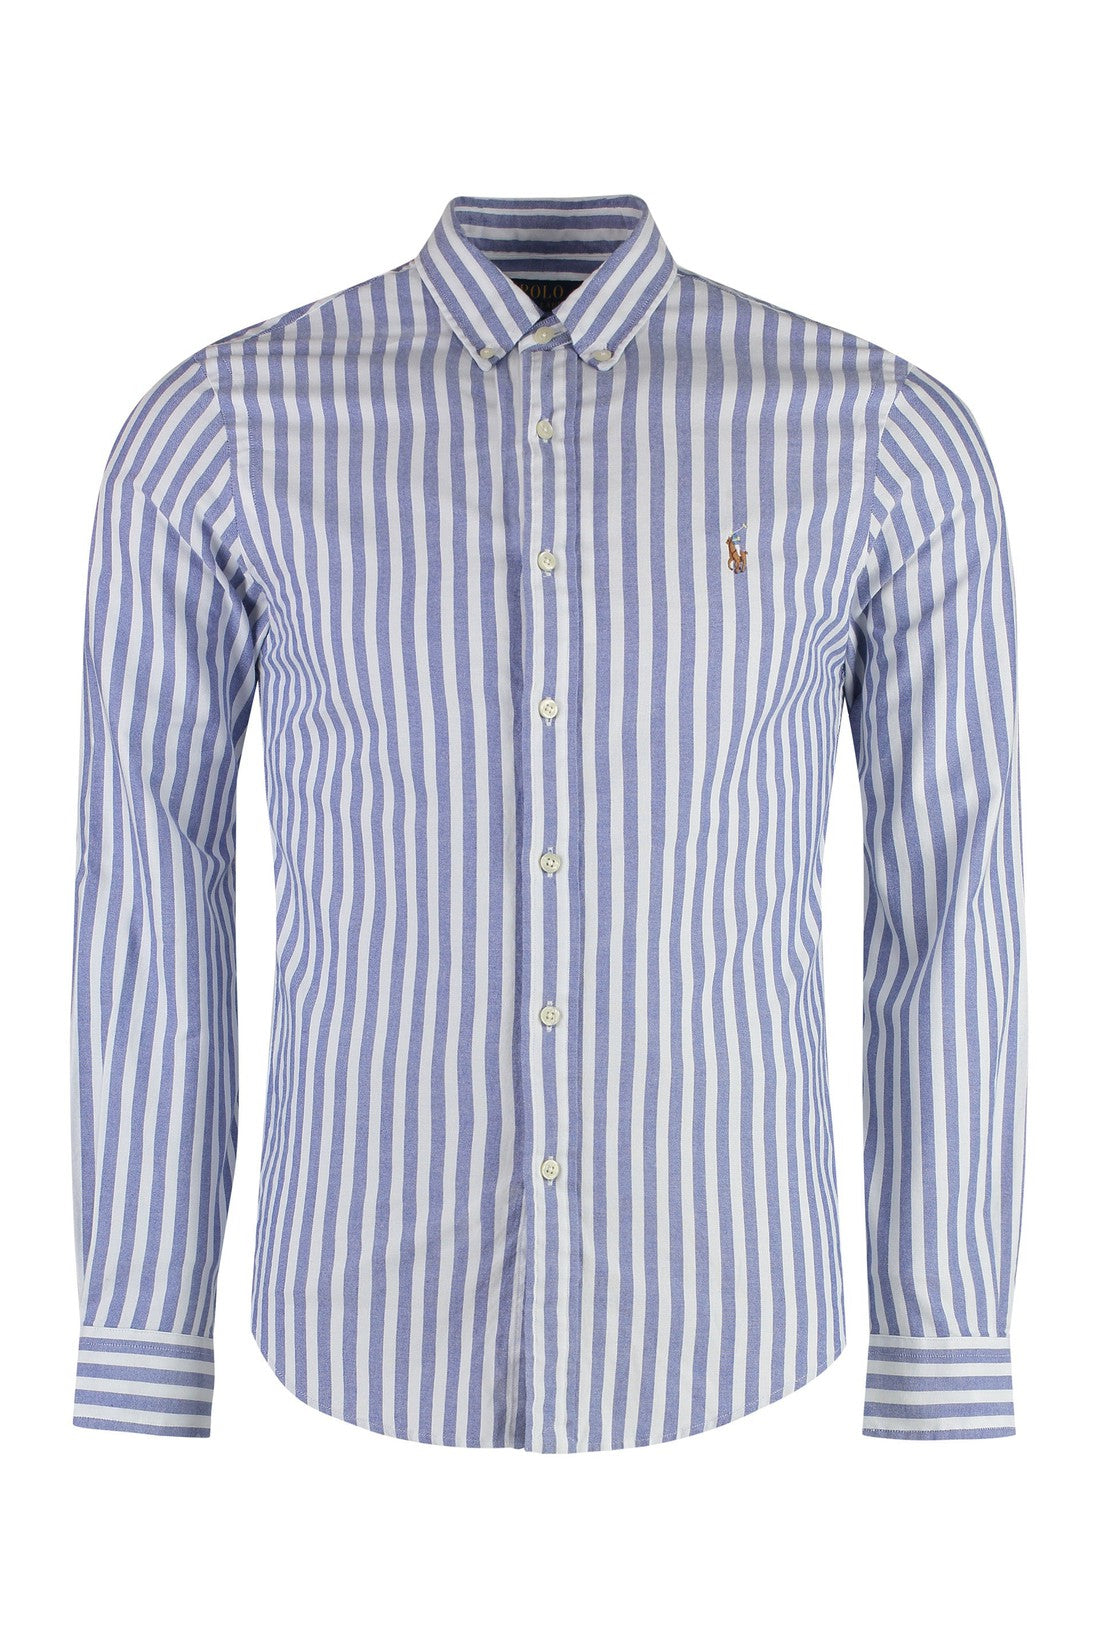 Polo Ralph Lauren-OUTLET-SALE-Striped cotton shirt-ARCHIVIST